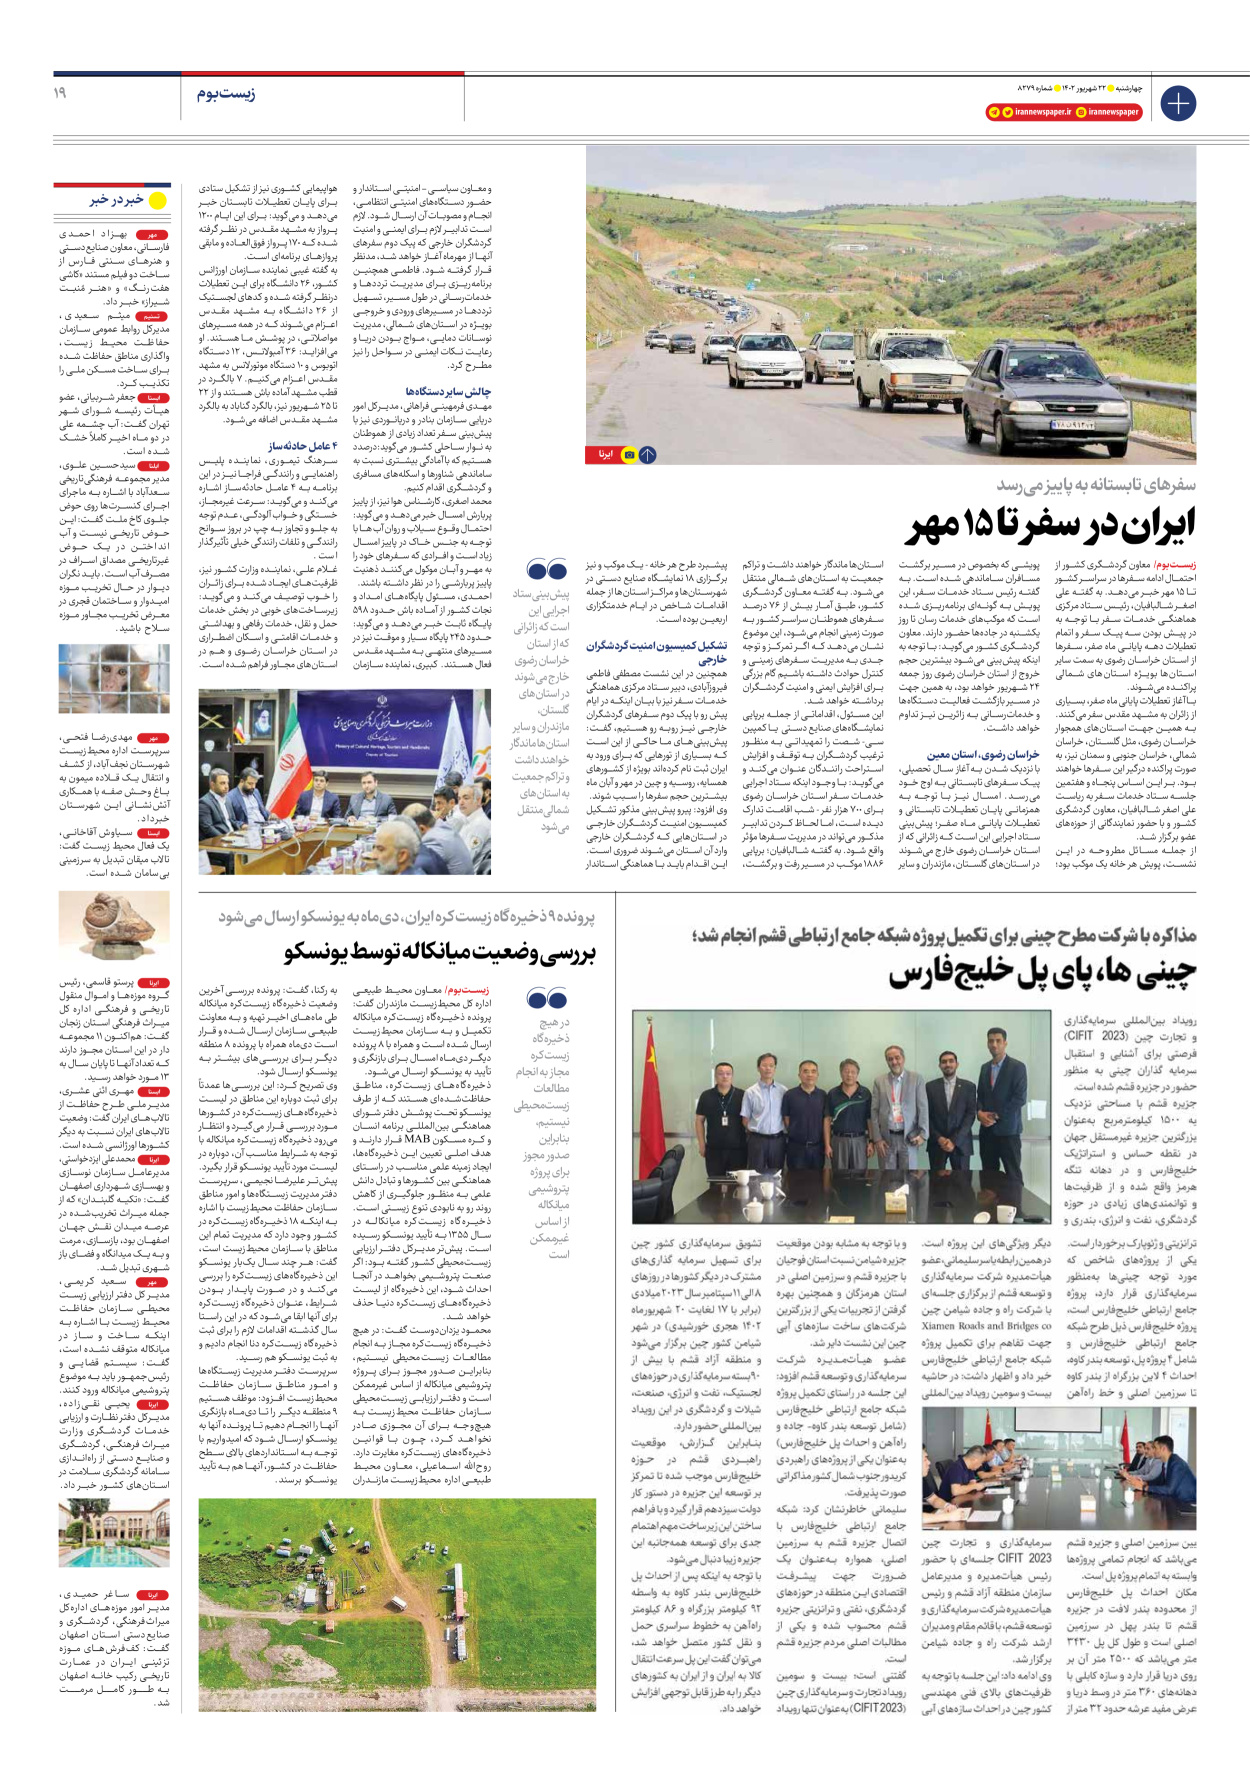 روزنامه ایران - شماره هشت هزار و دویست و هفتاد و نه - ۲۲ شهریور ۱۴۰۲ - صفحه ۱۹